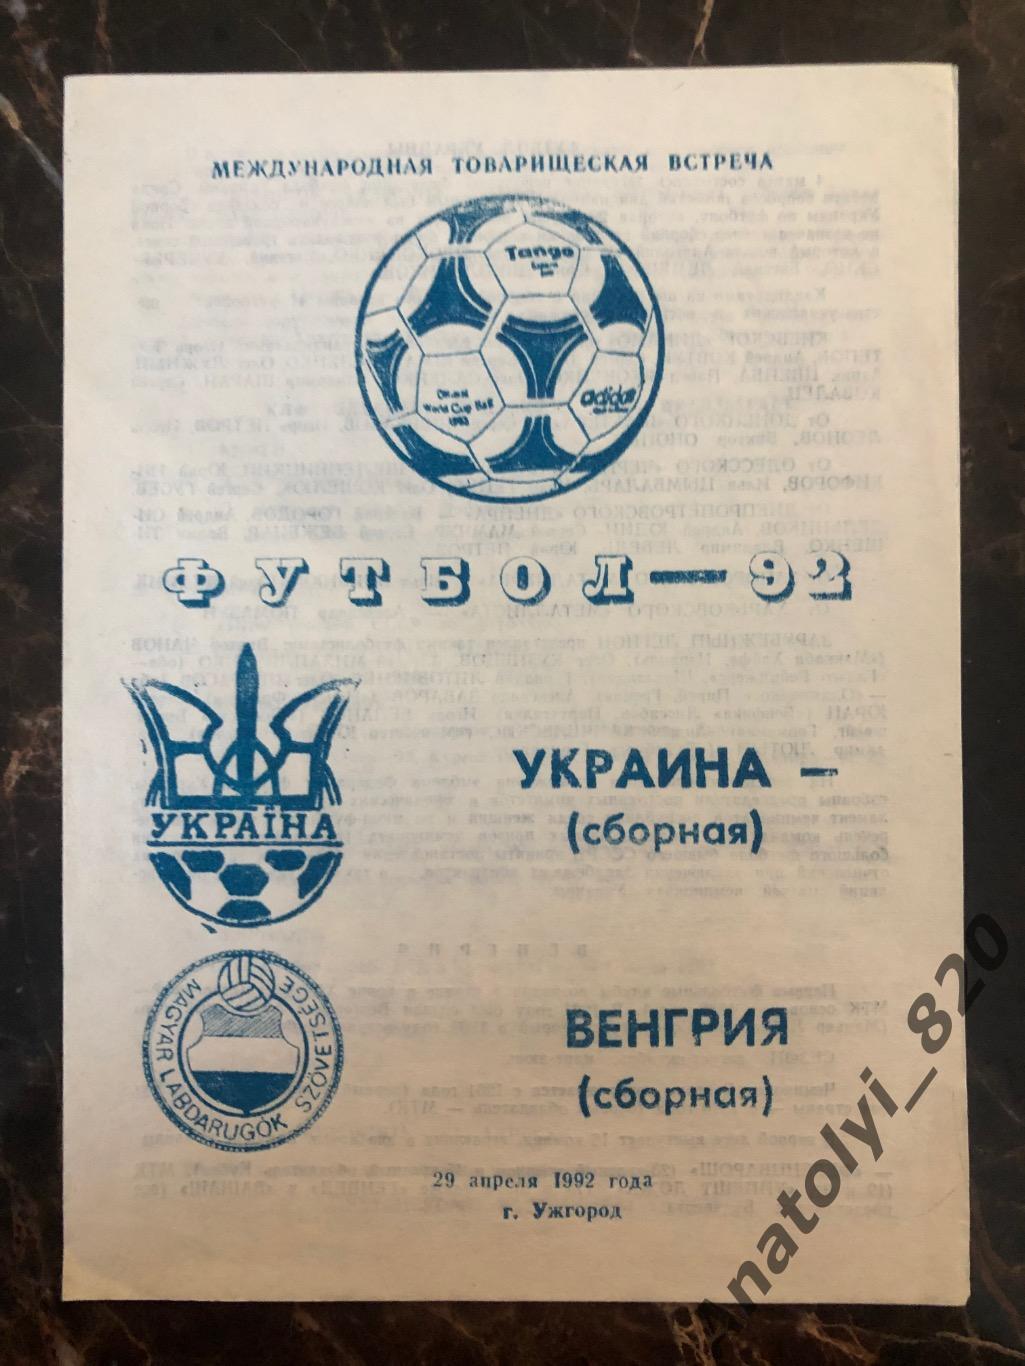 Сборная Украины - сборная Венгрии, 29.04.1992